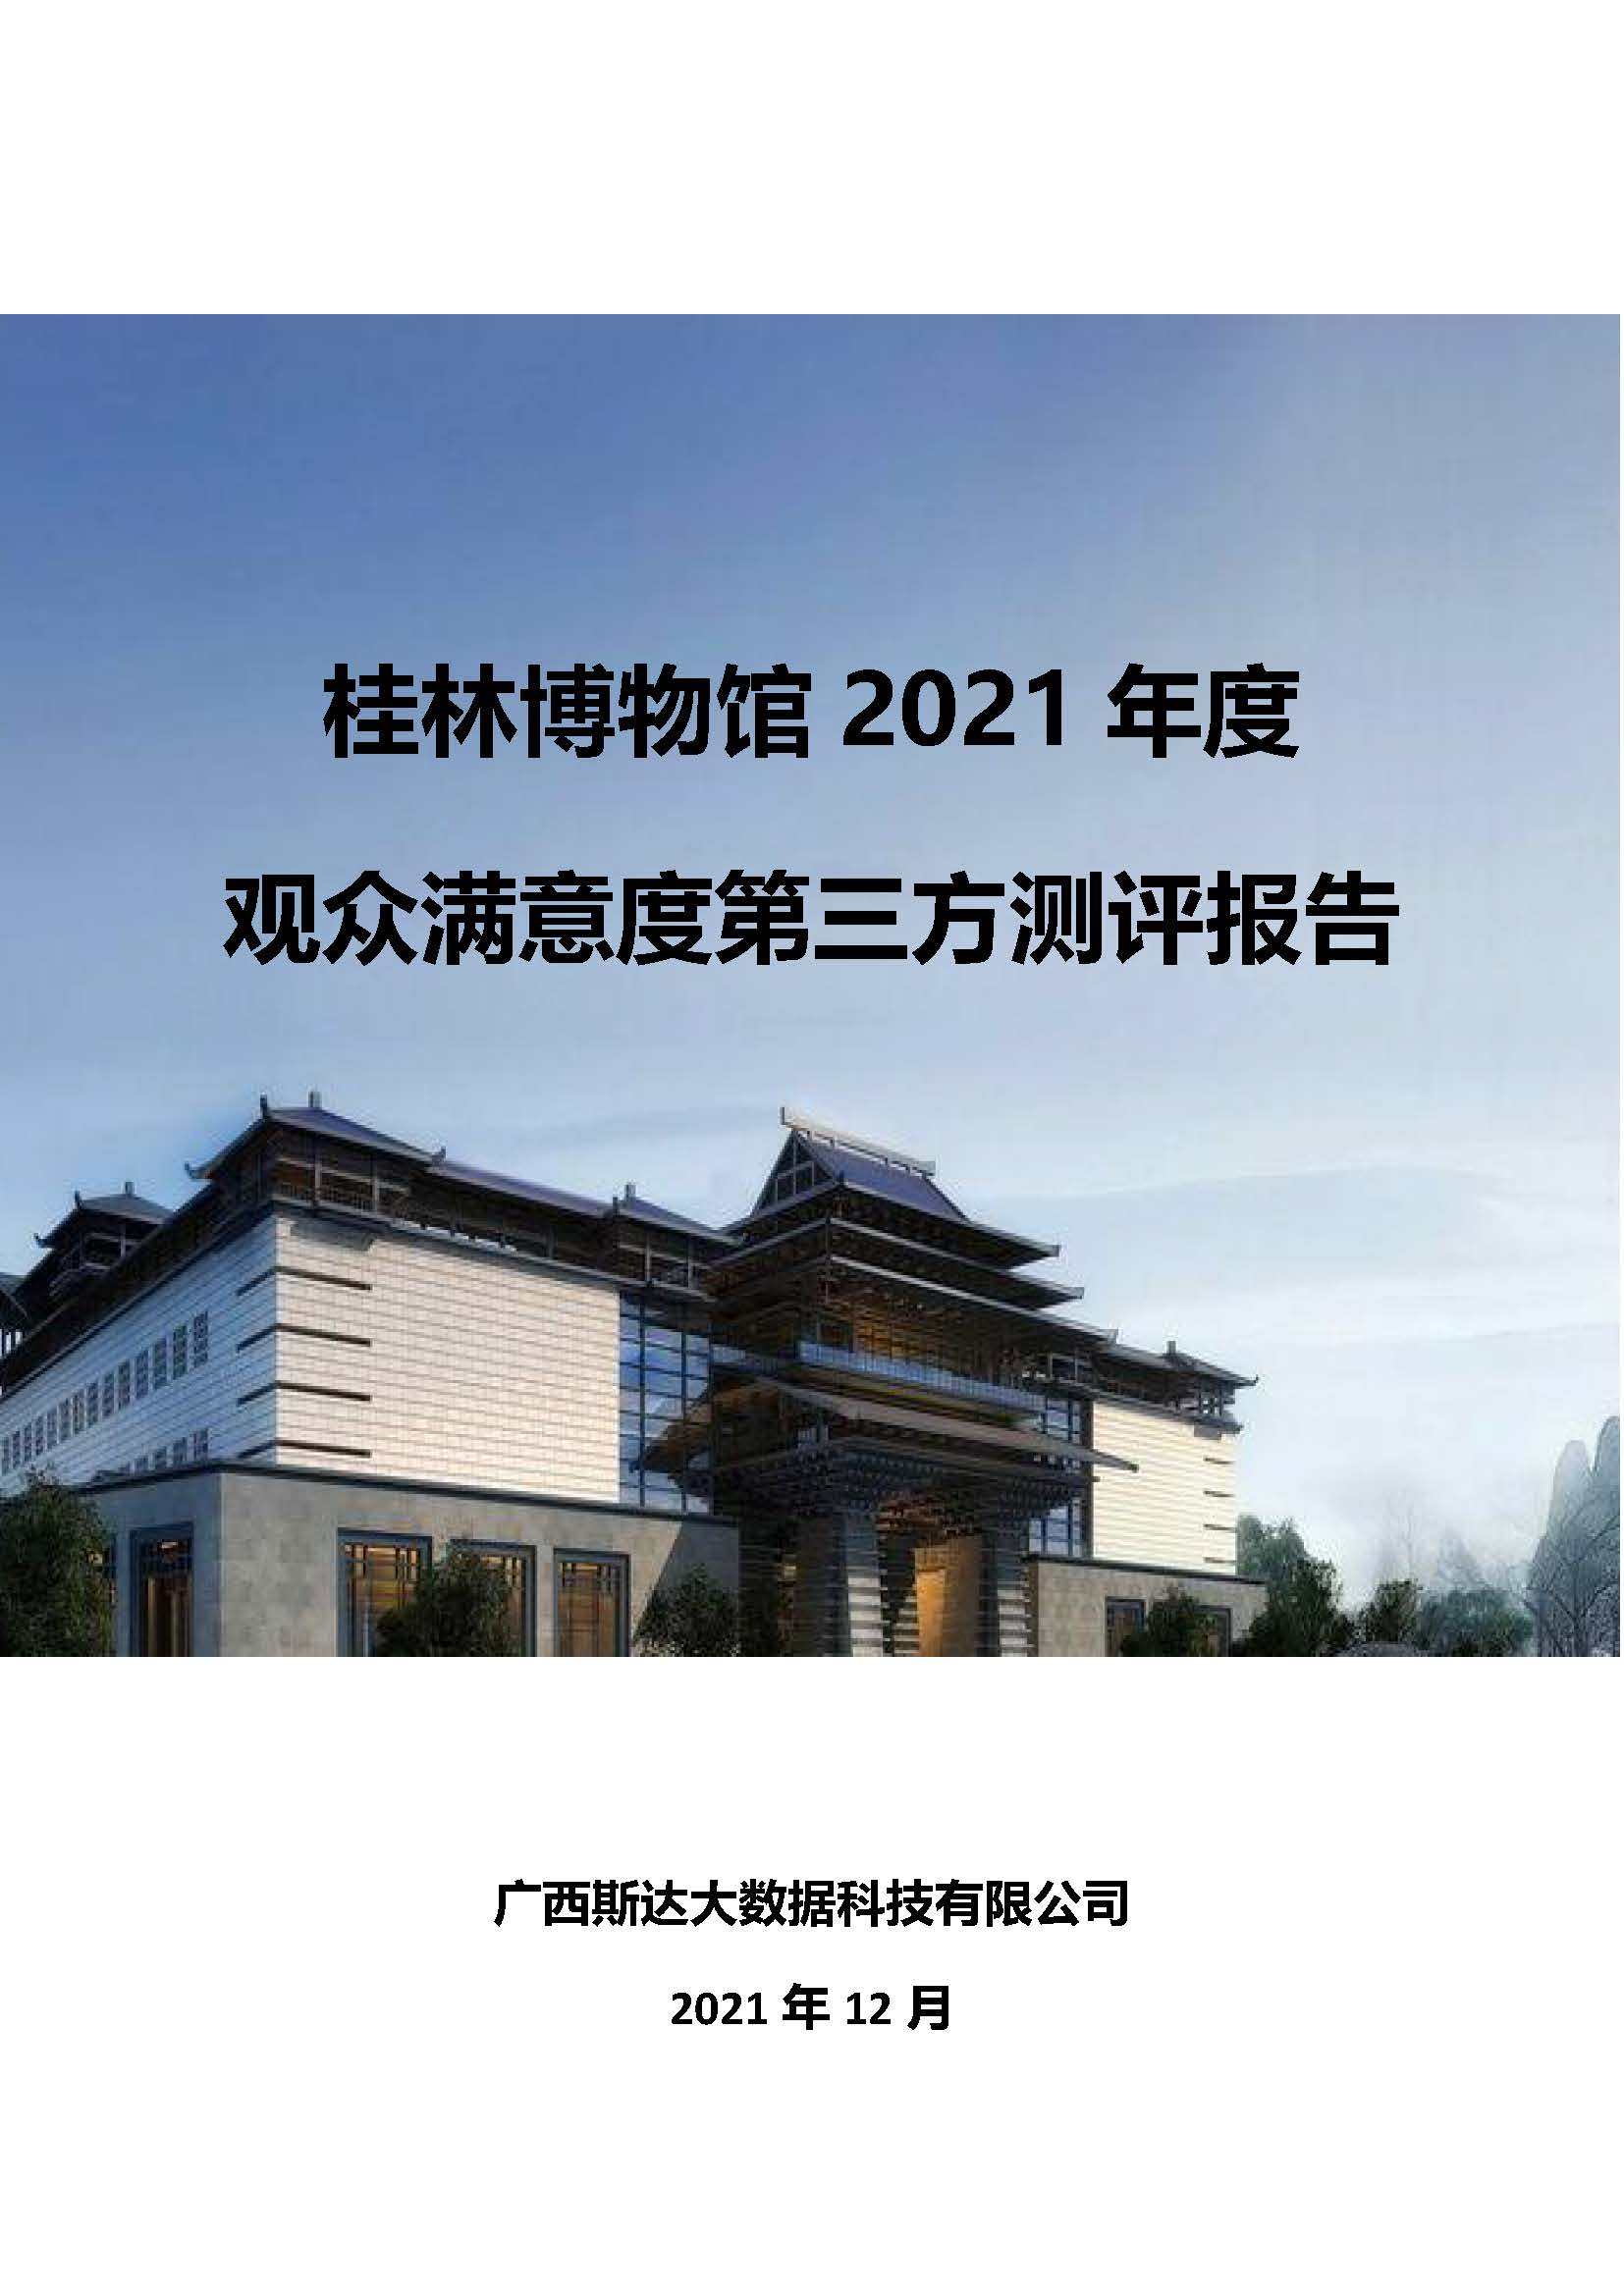 2021年桂林博物馆参观观众满意度调查报告_v3_页面_01.jpg